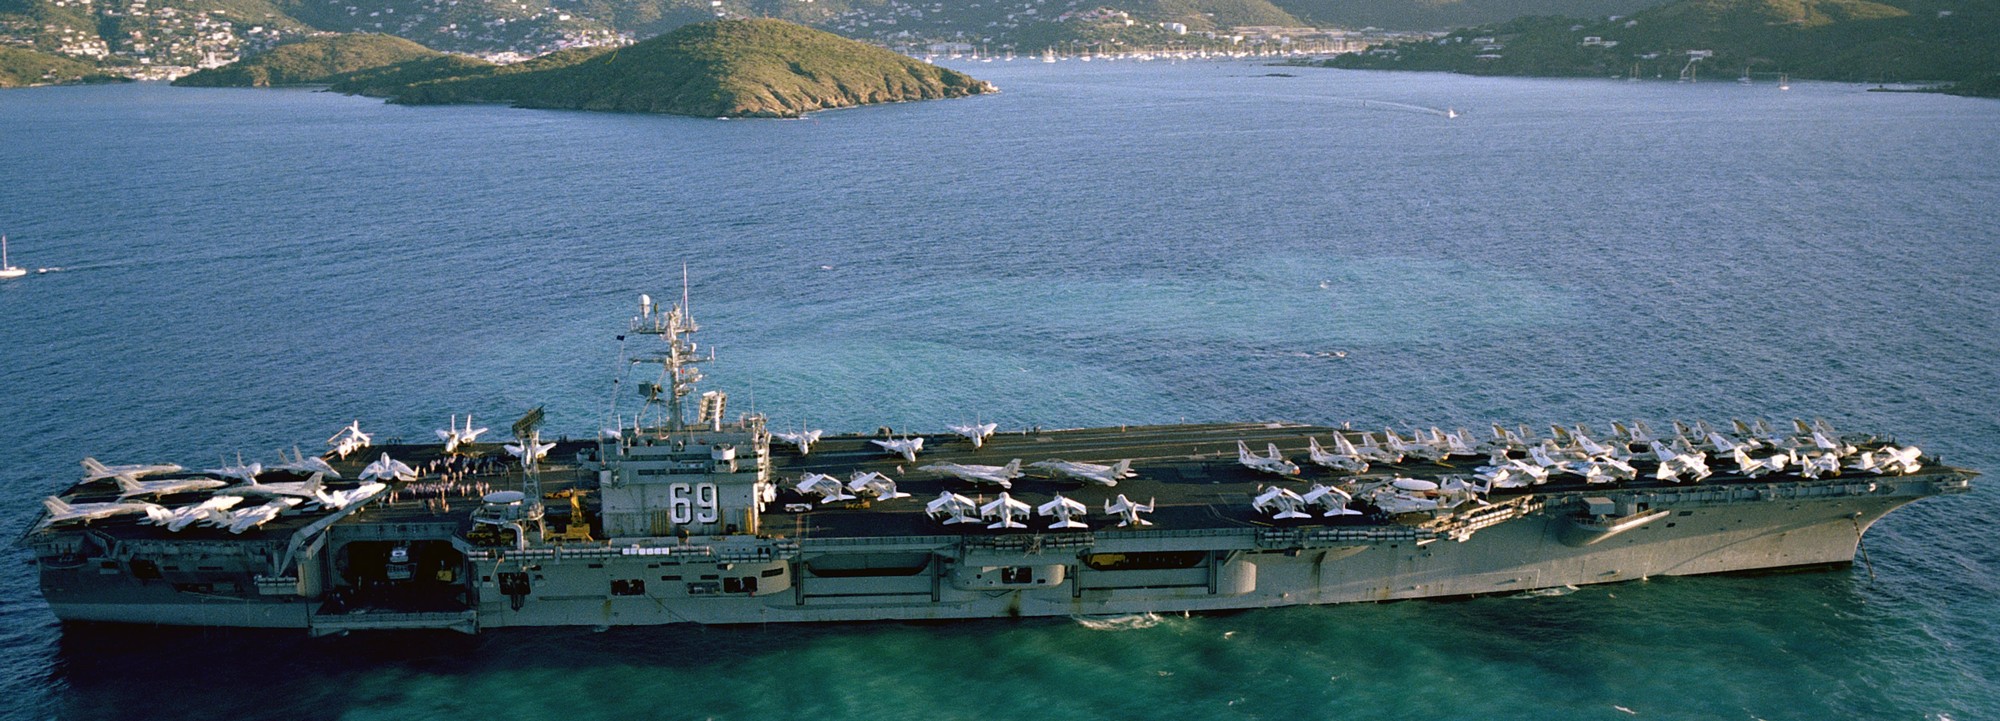 cvn-69 uss dwight d. eisenhower aircraft carrier air wing cvw-7 us navy virgin islands 239